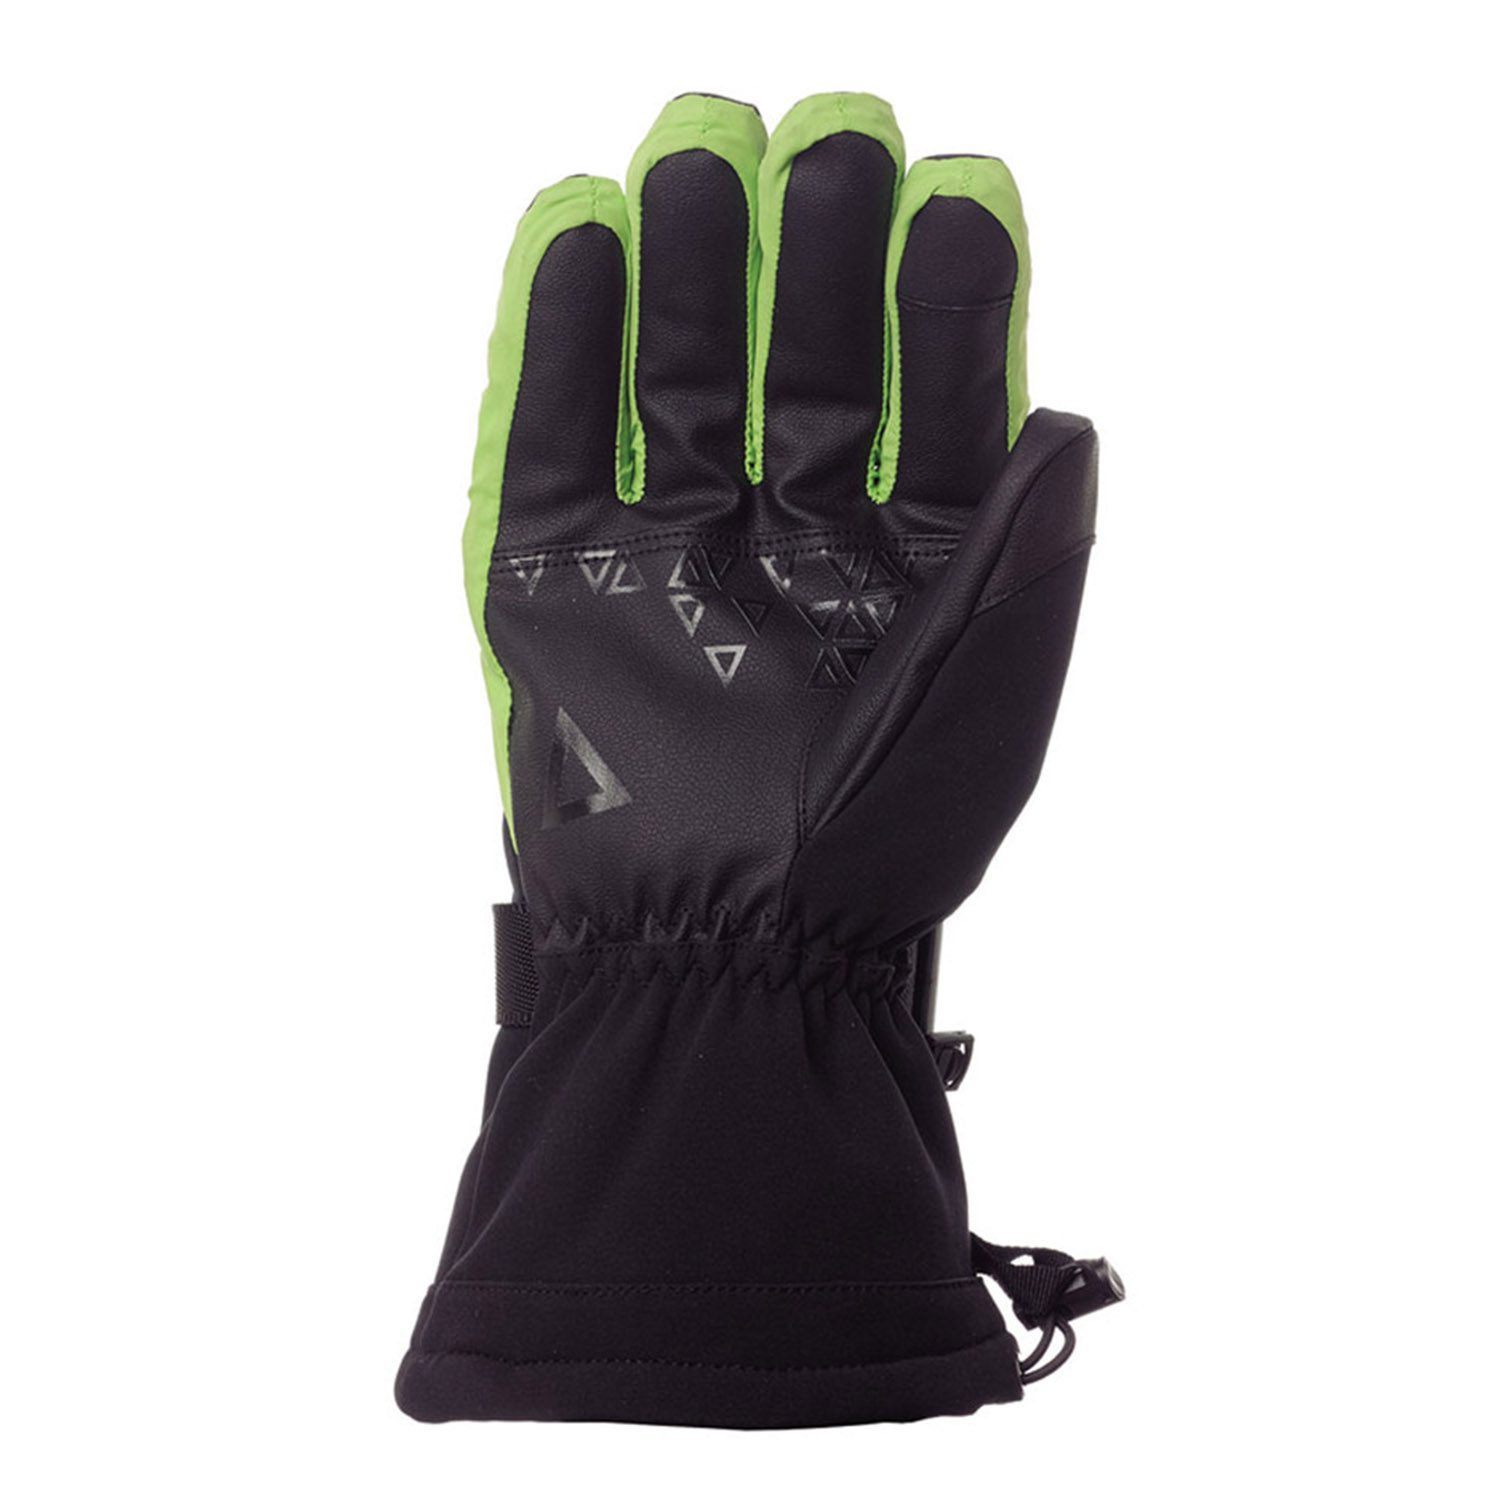 ΑΞΕΣΟΥΑΡ MATT RICARD GORE-TEX 3189 Γάντια σκι-Μαύρο-πράσινο